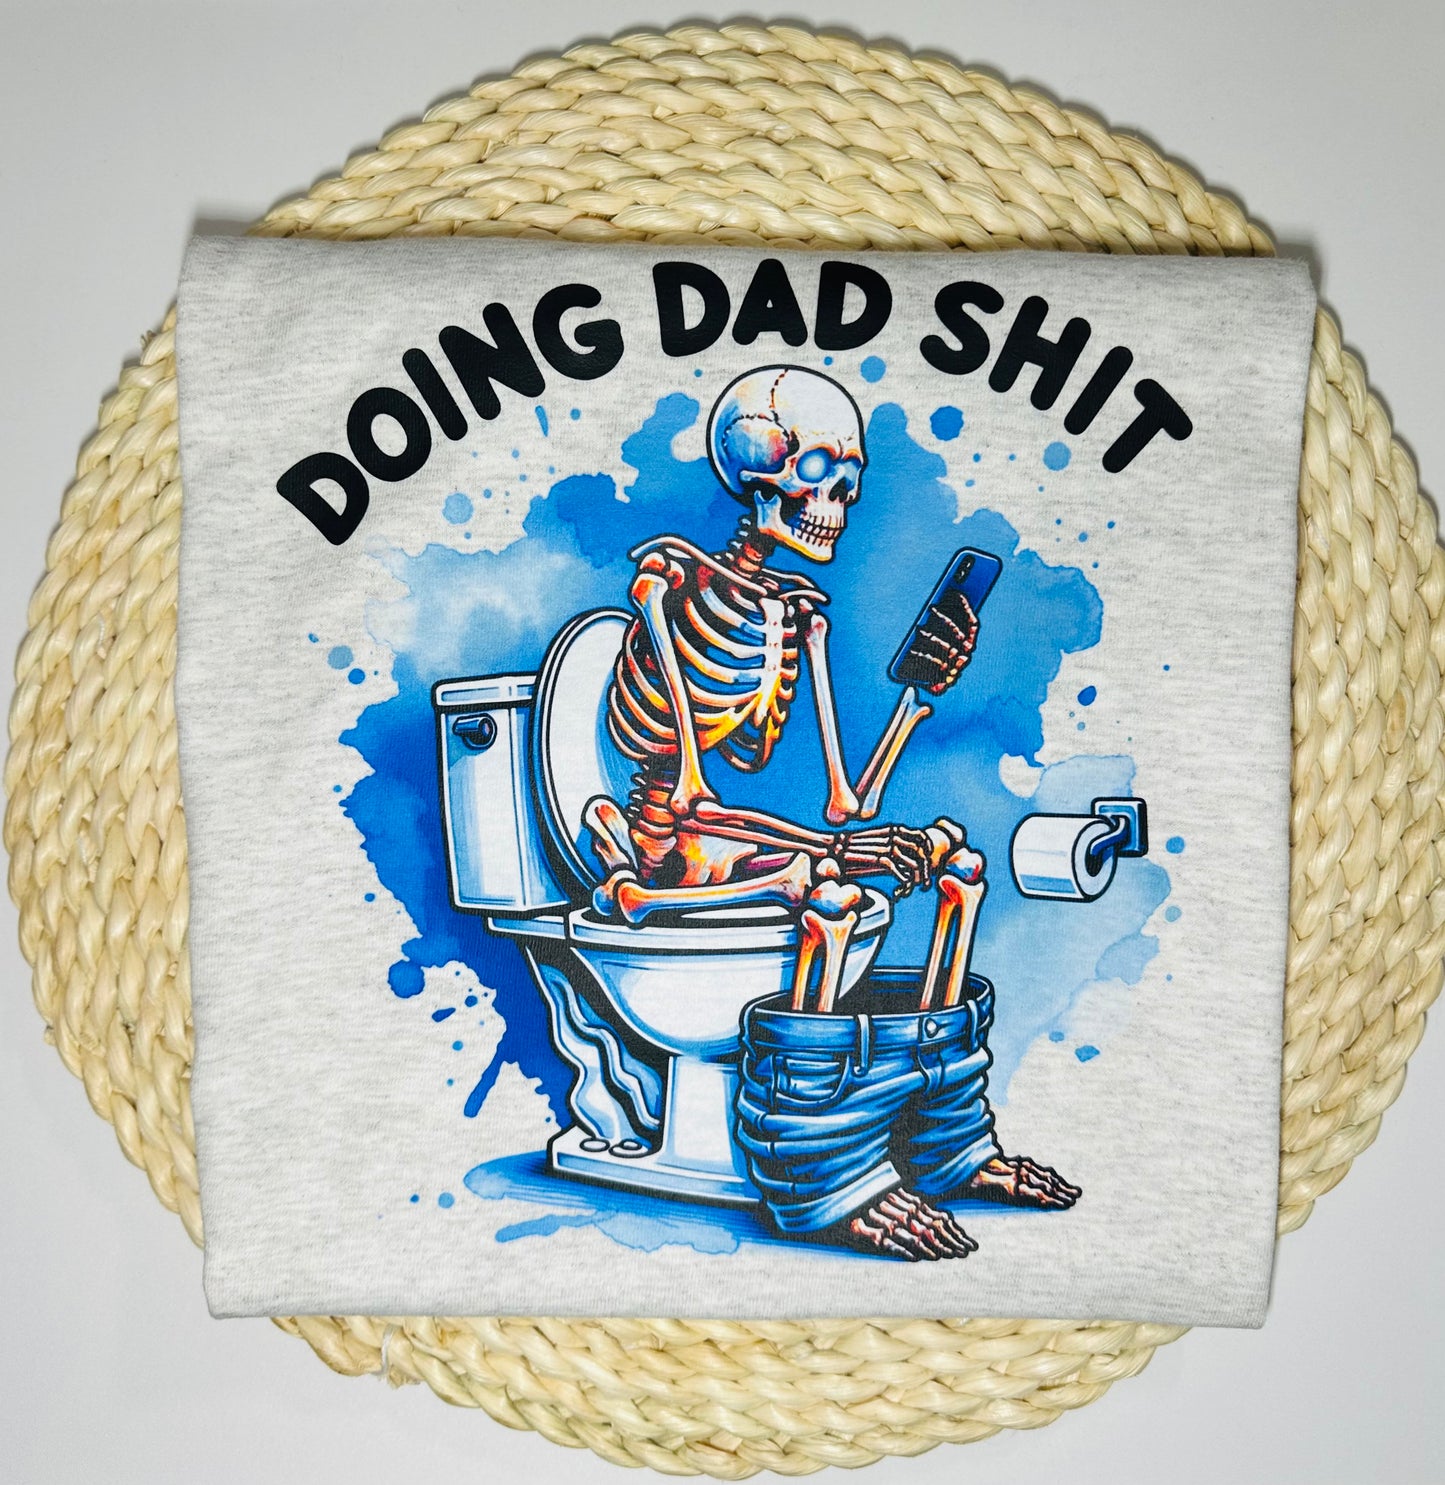 Dad T-shirt